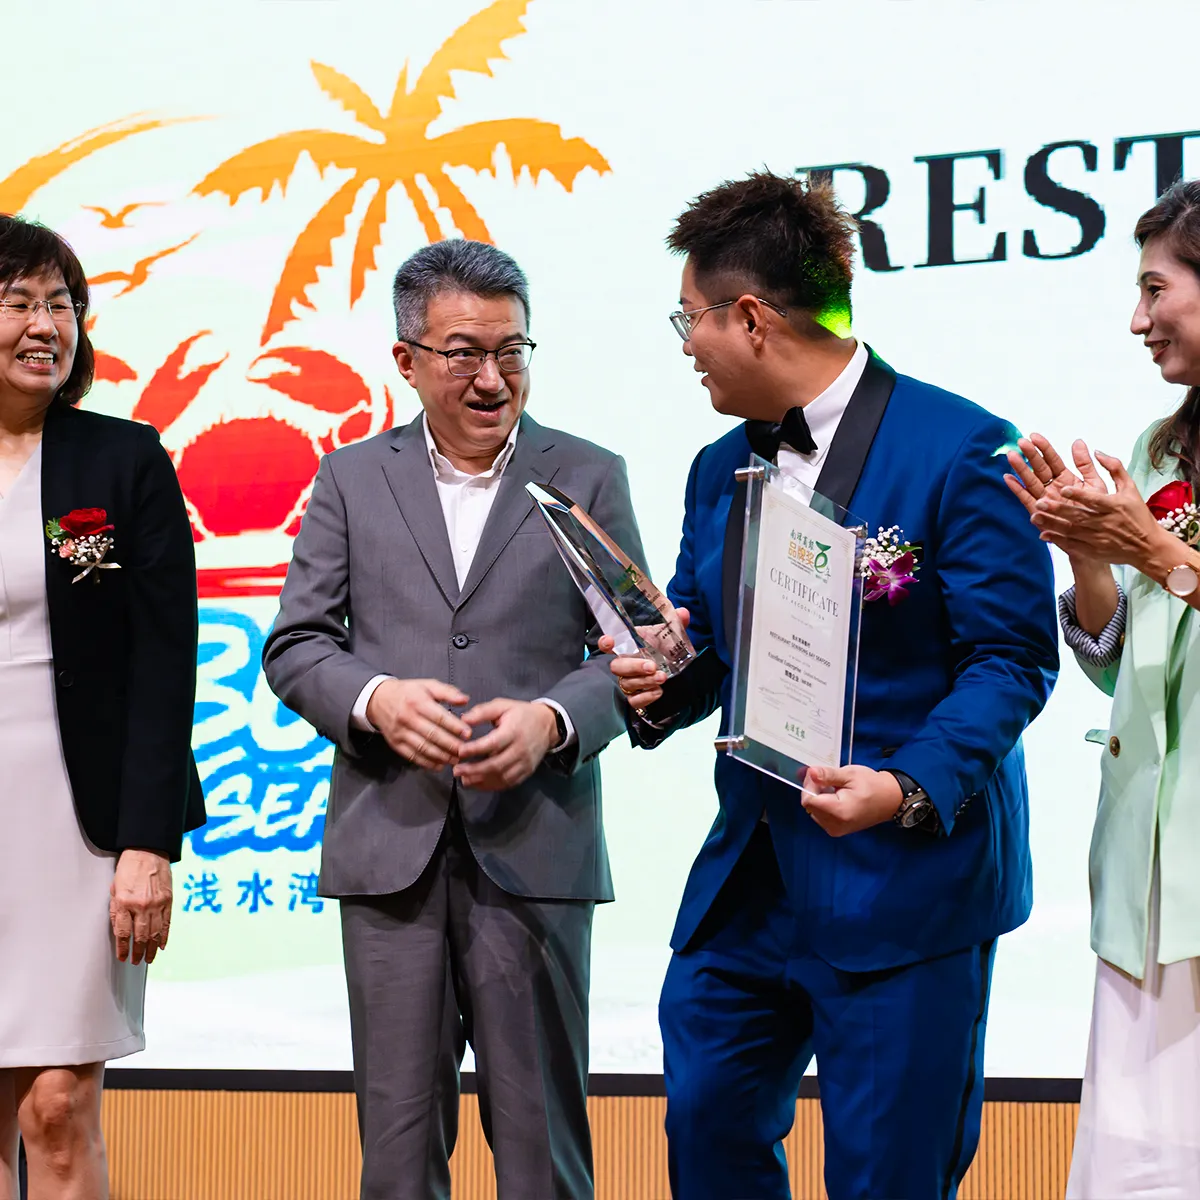 Nanyang 100th Anniversary Superb Brand Award - Senibong Bay Seafood